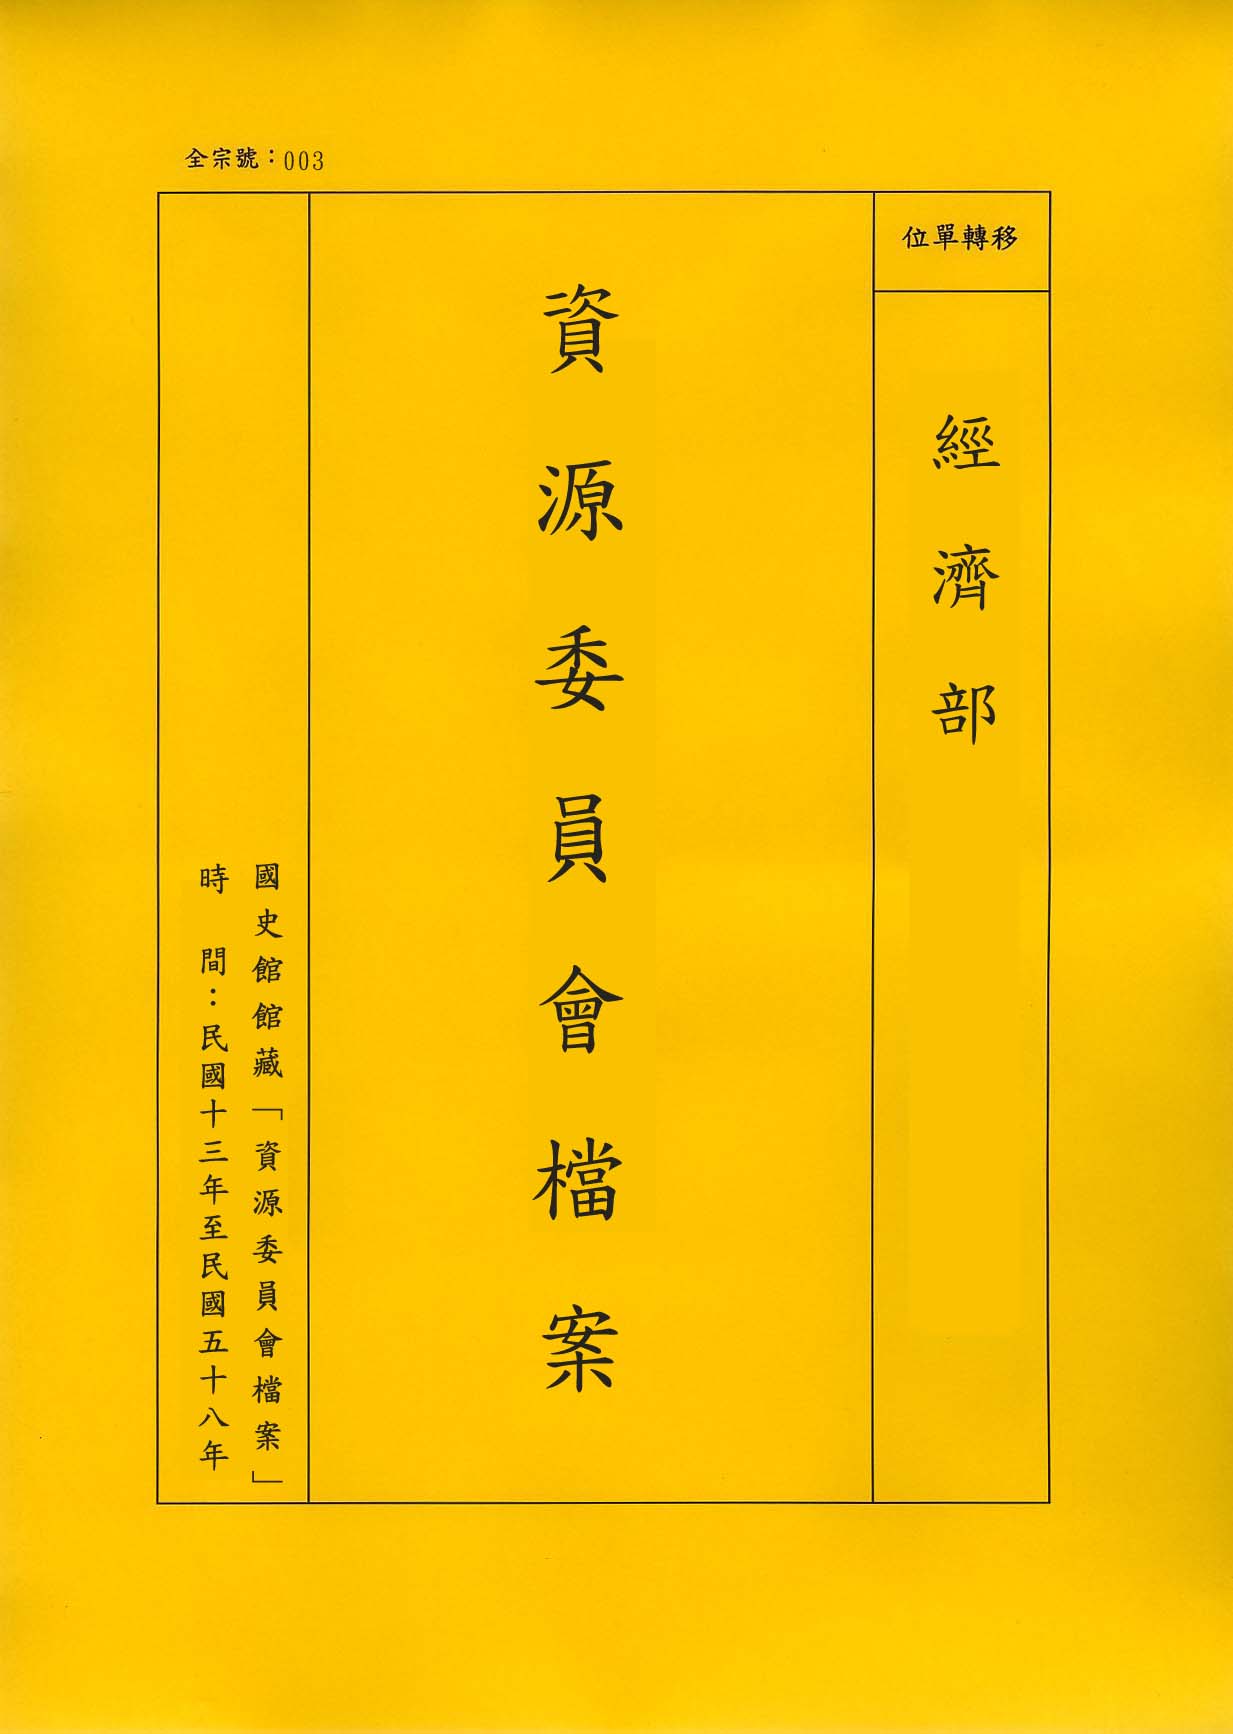 卷名:錢樹聲個人資料及函件Personnel Report and Letters of Shu-Shen(003-020600-2034)